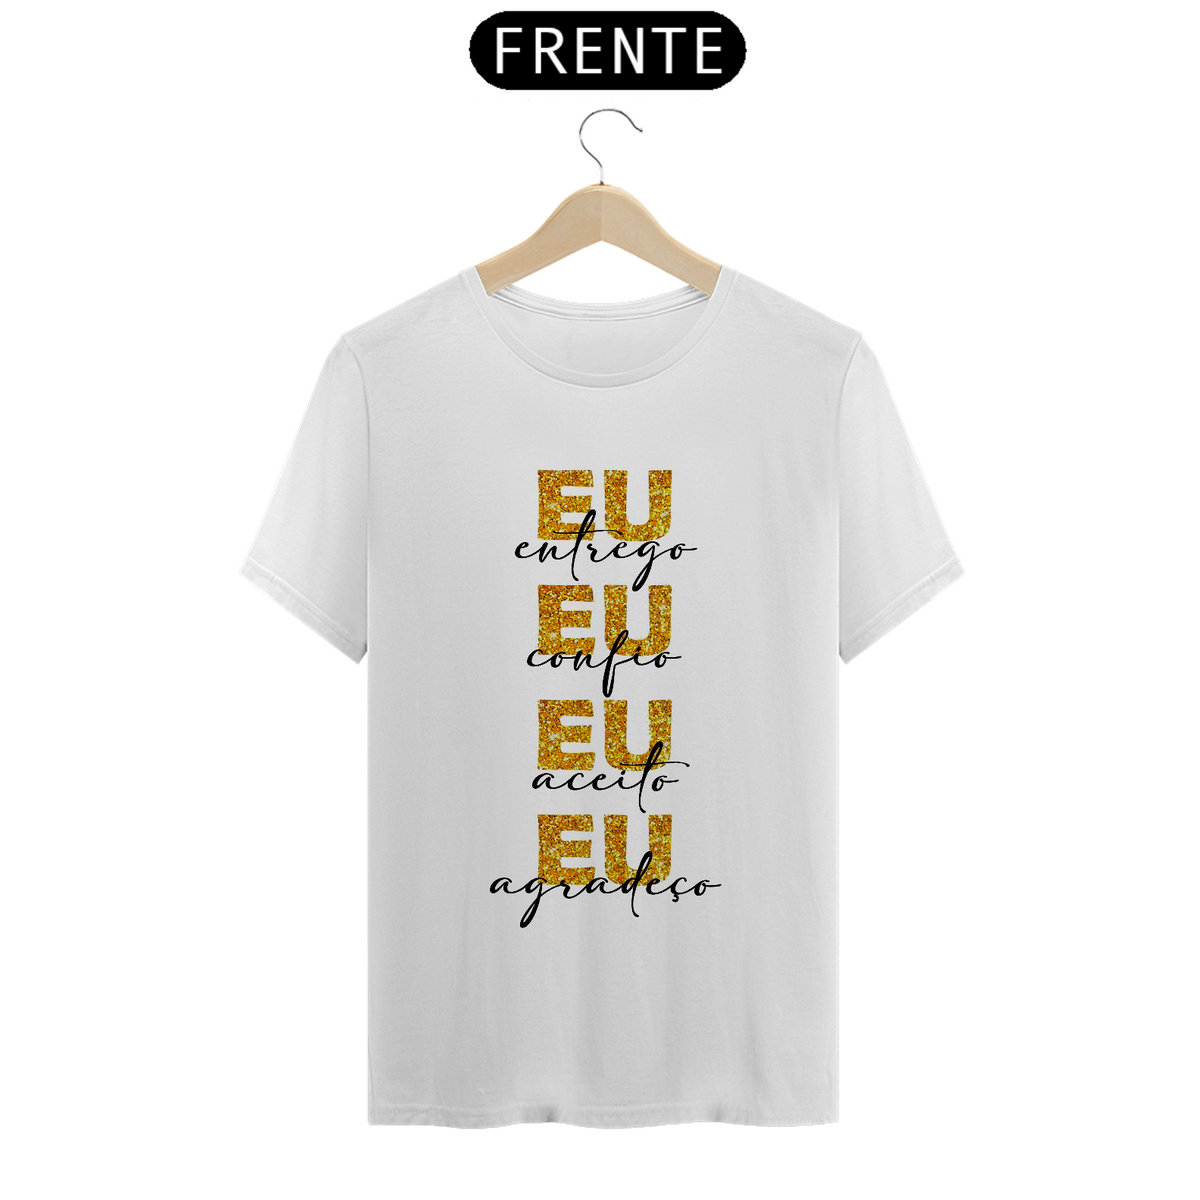 Nome do produto: Camiseta FÉ